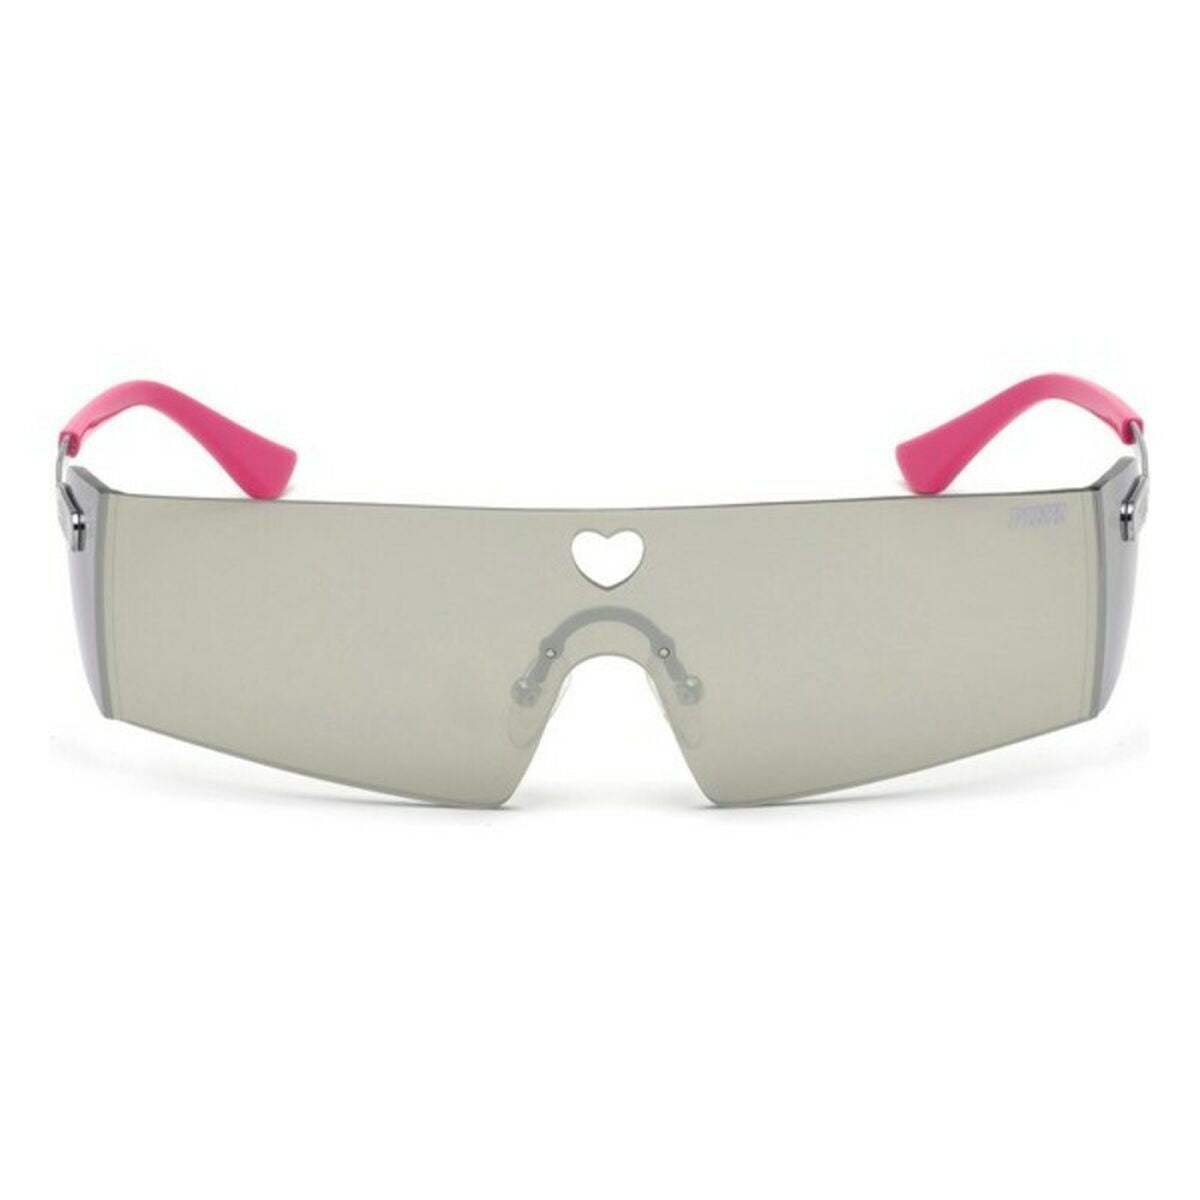 Ladies' Sunglasses Victoria's Secret PK0008-16C